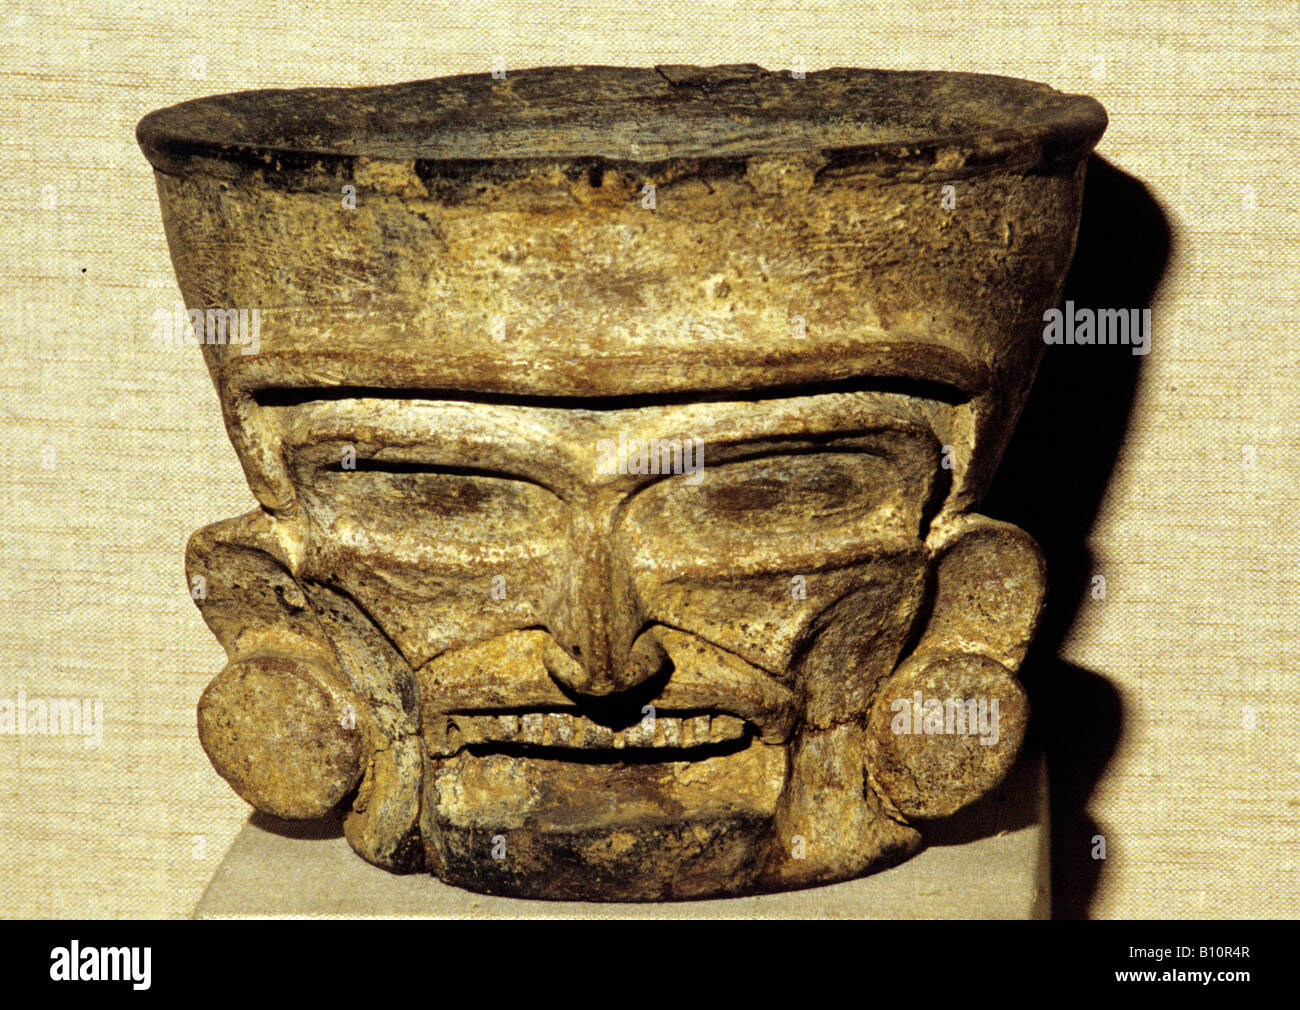 Aztekischen Gott Huehueteotl von quetzaltepeque. Mexiko Stockfoto